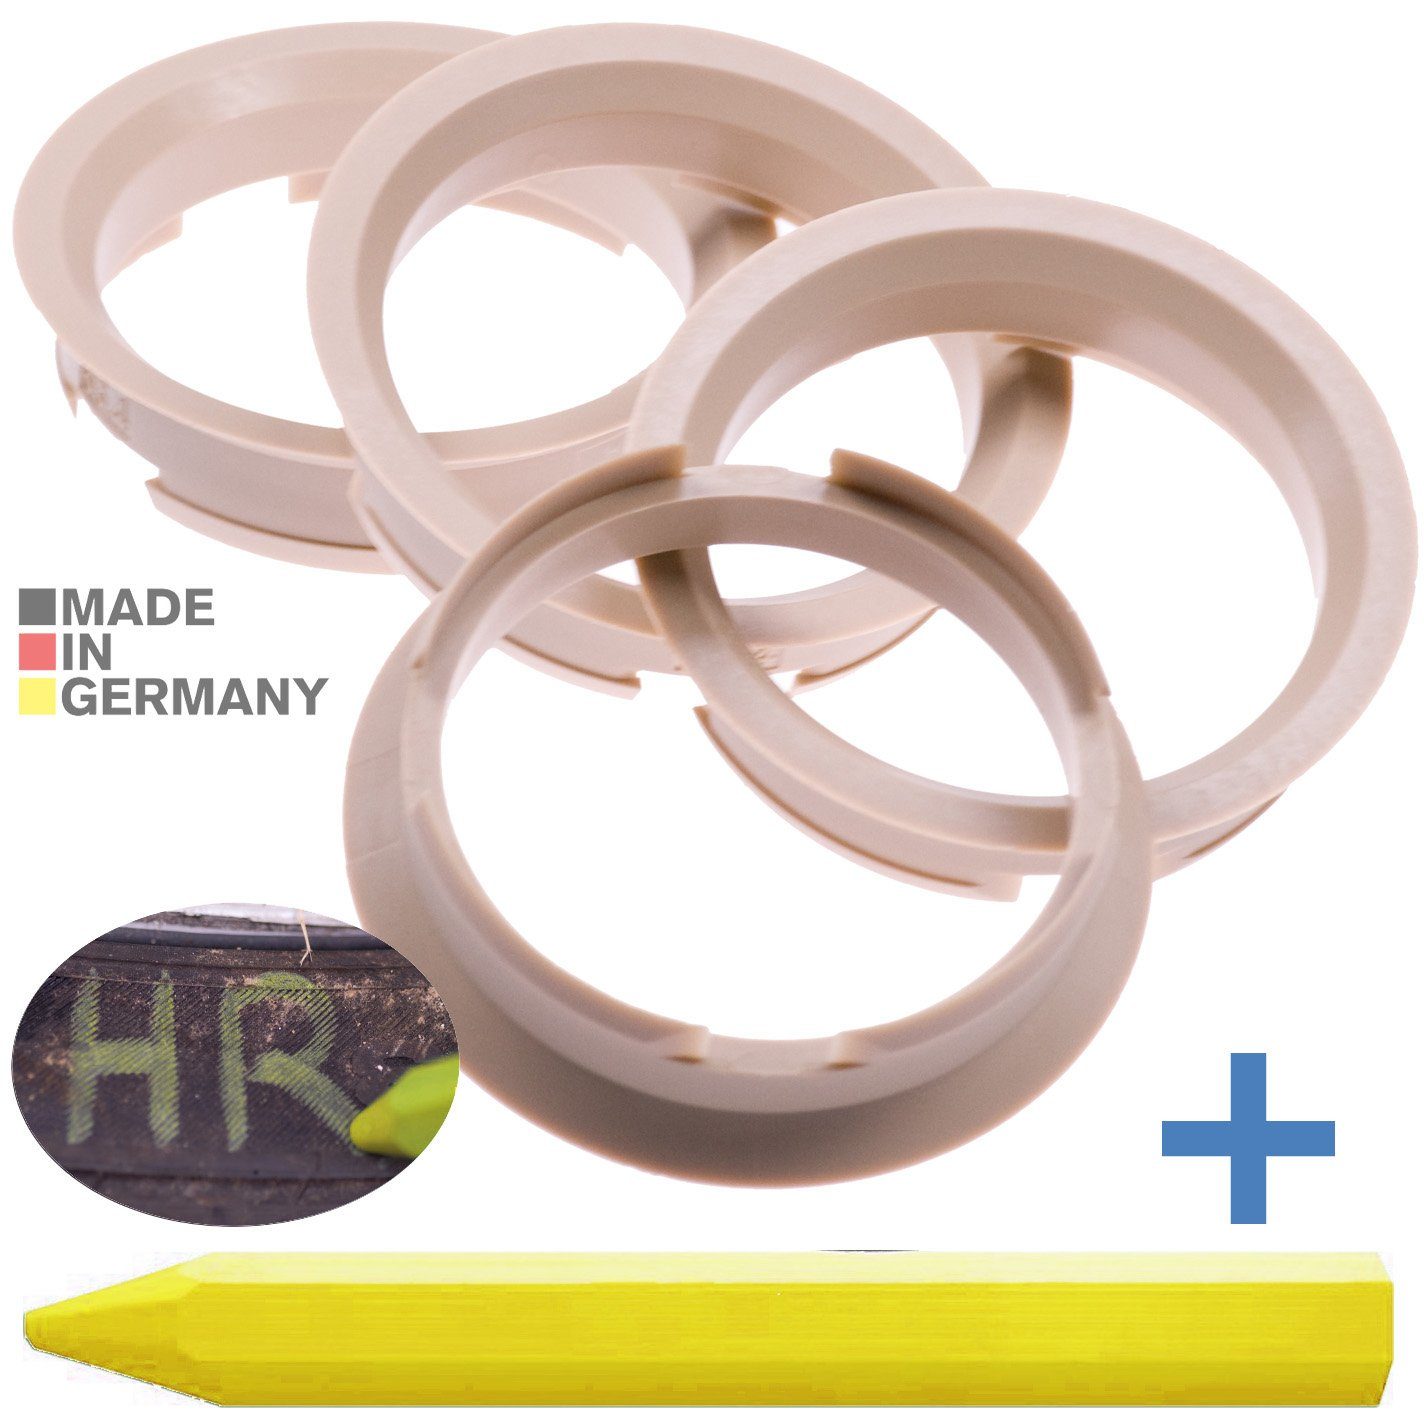 RKC Reifenstift 4X Zentrierringe Beige Felgen Ringe + 1x Reifen Kreide Fett Stift, Maße: 63,4 x 56,6 mm